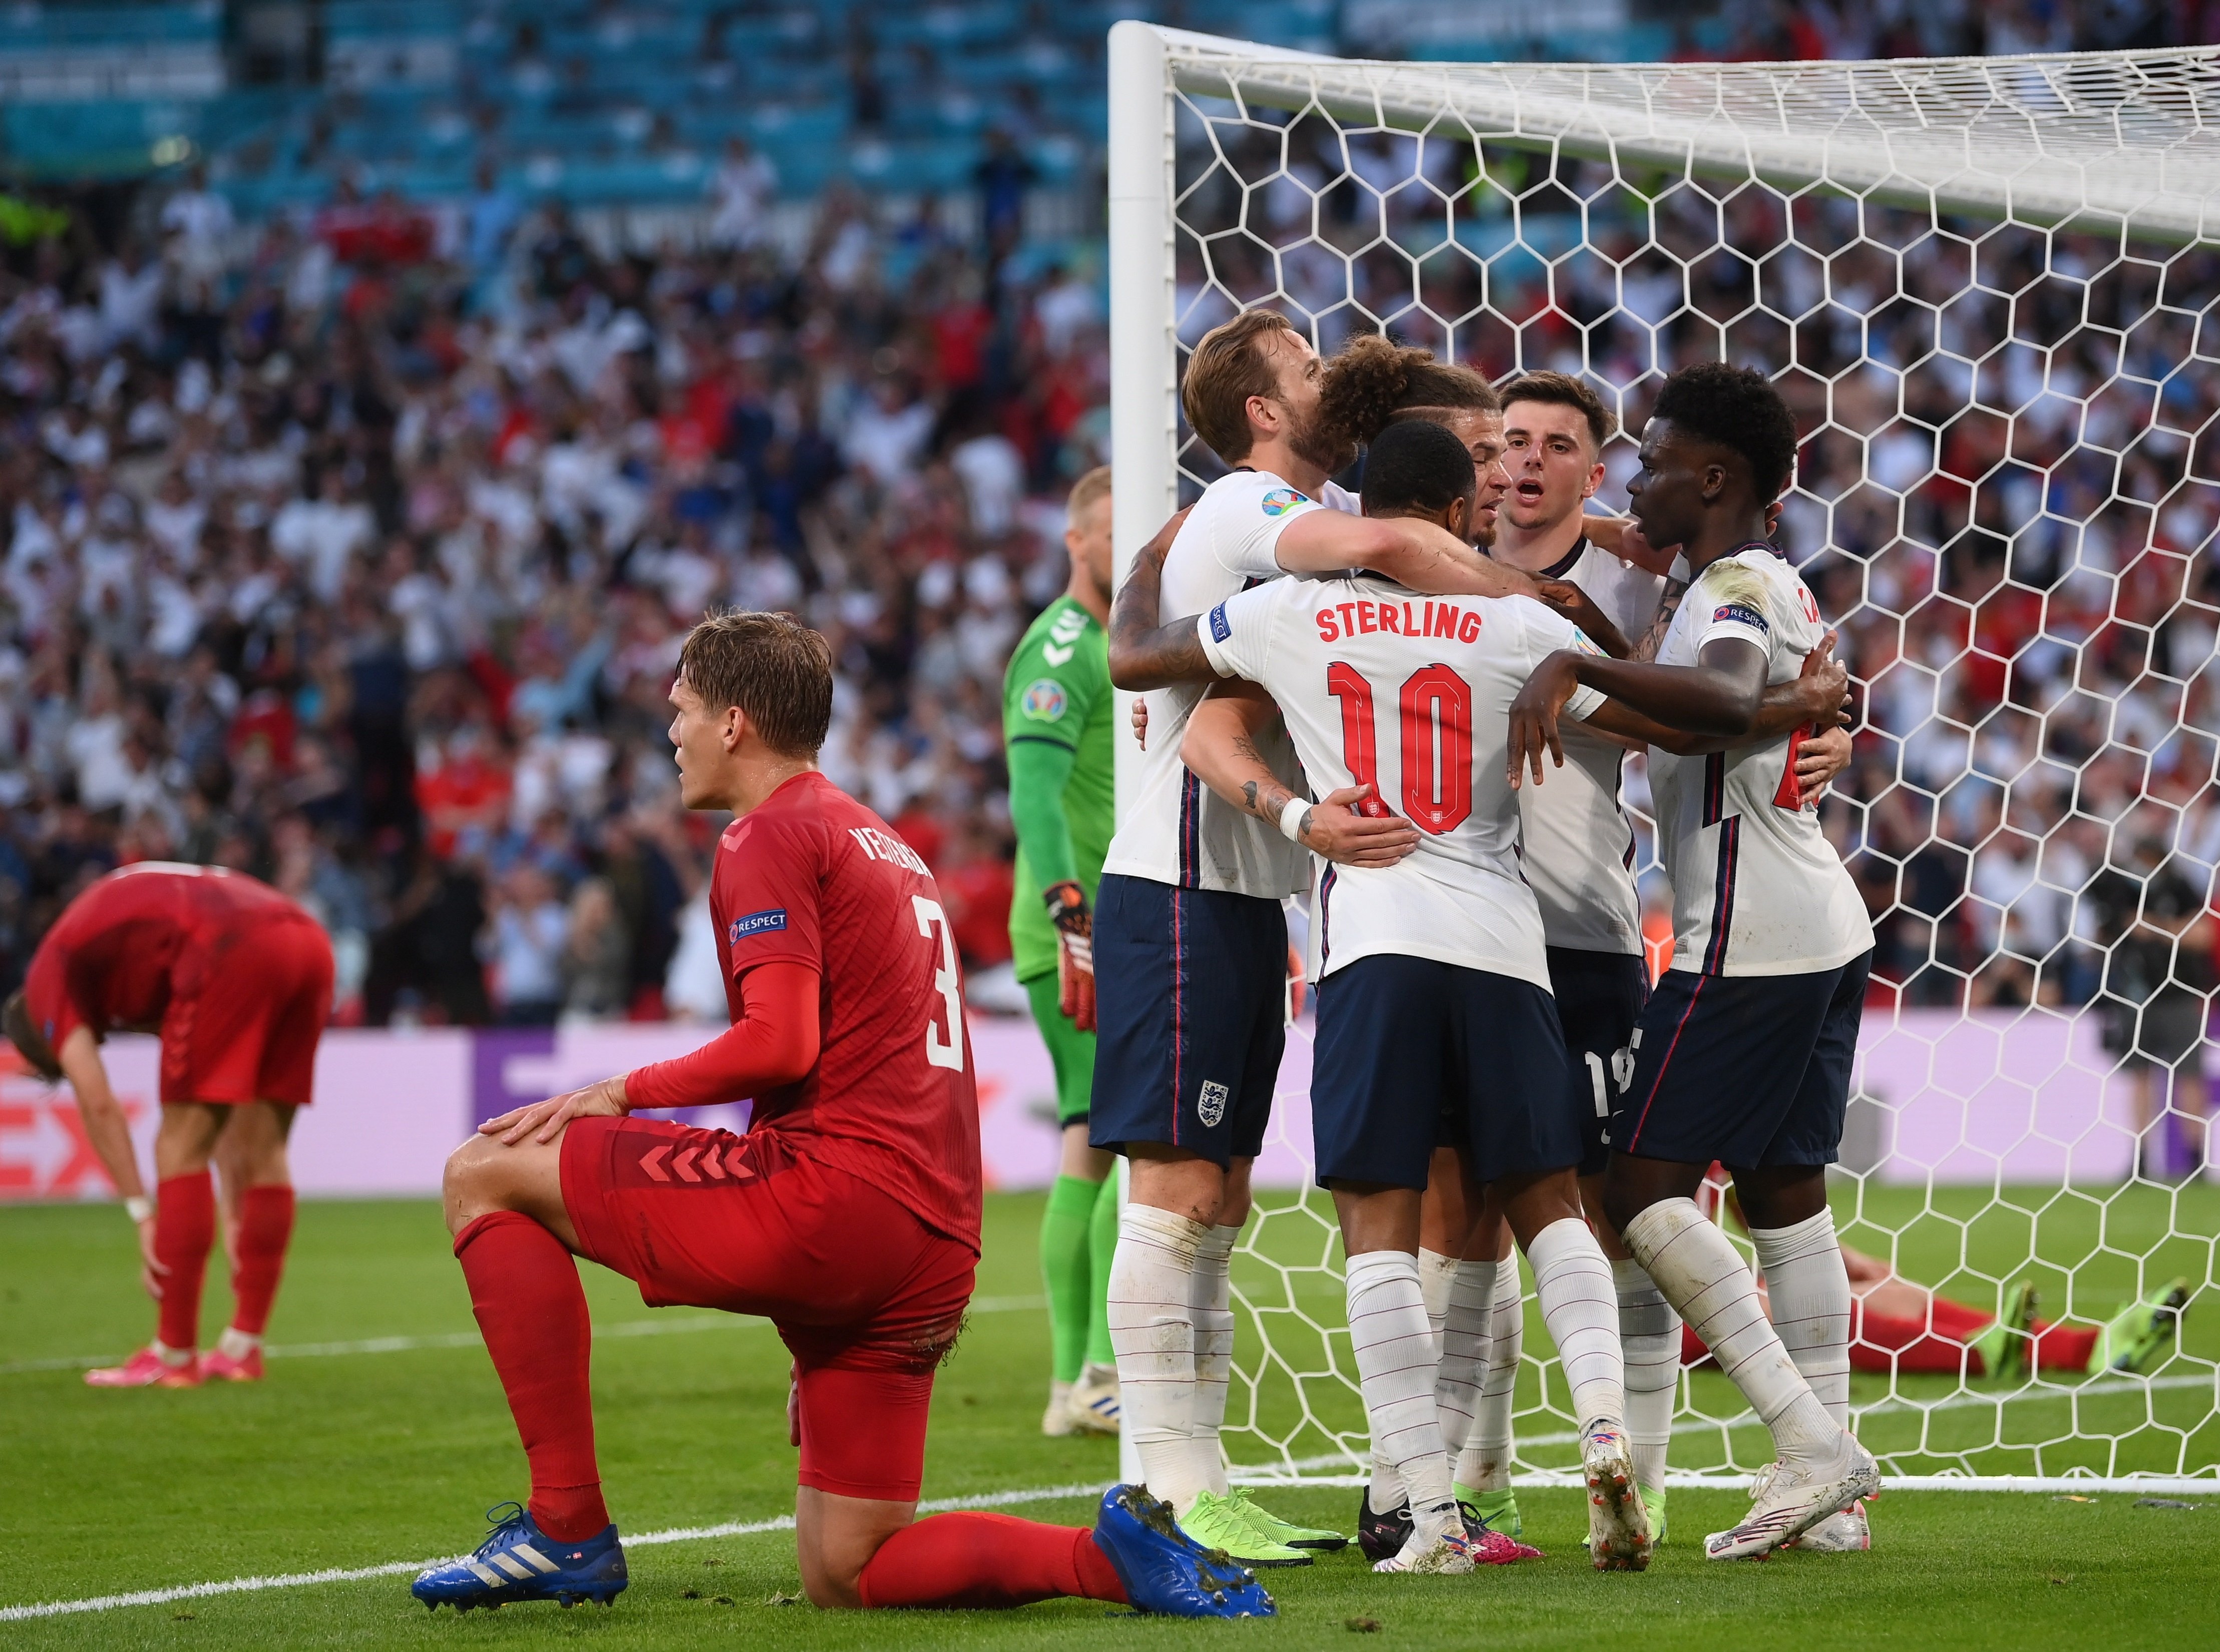 Inglaterra accede a su primera final de la Eurocopa con polémica (2-1)